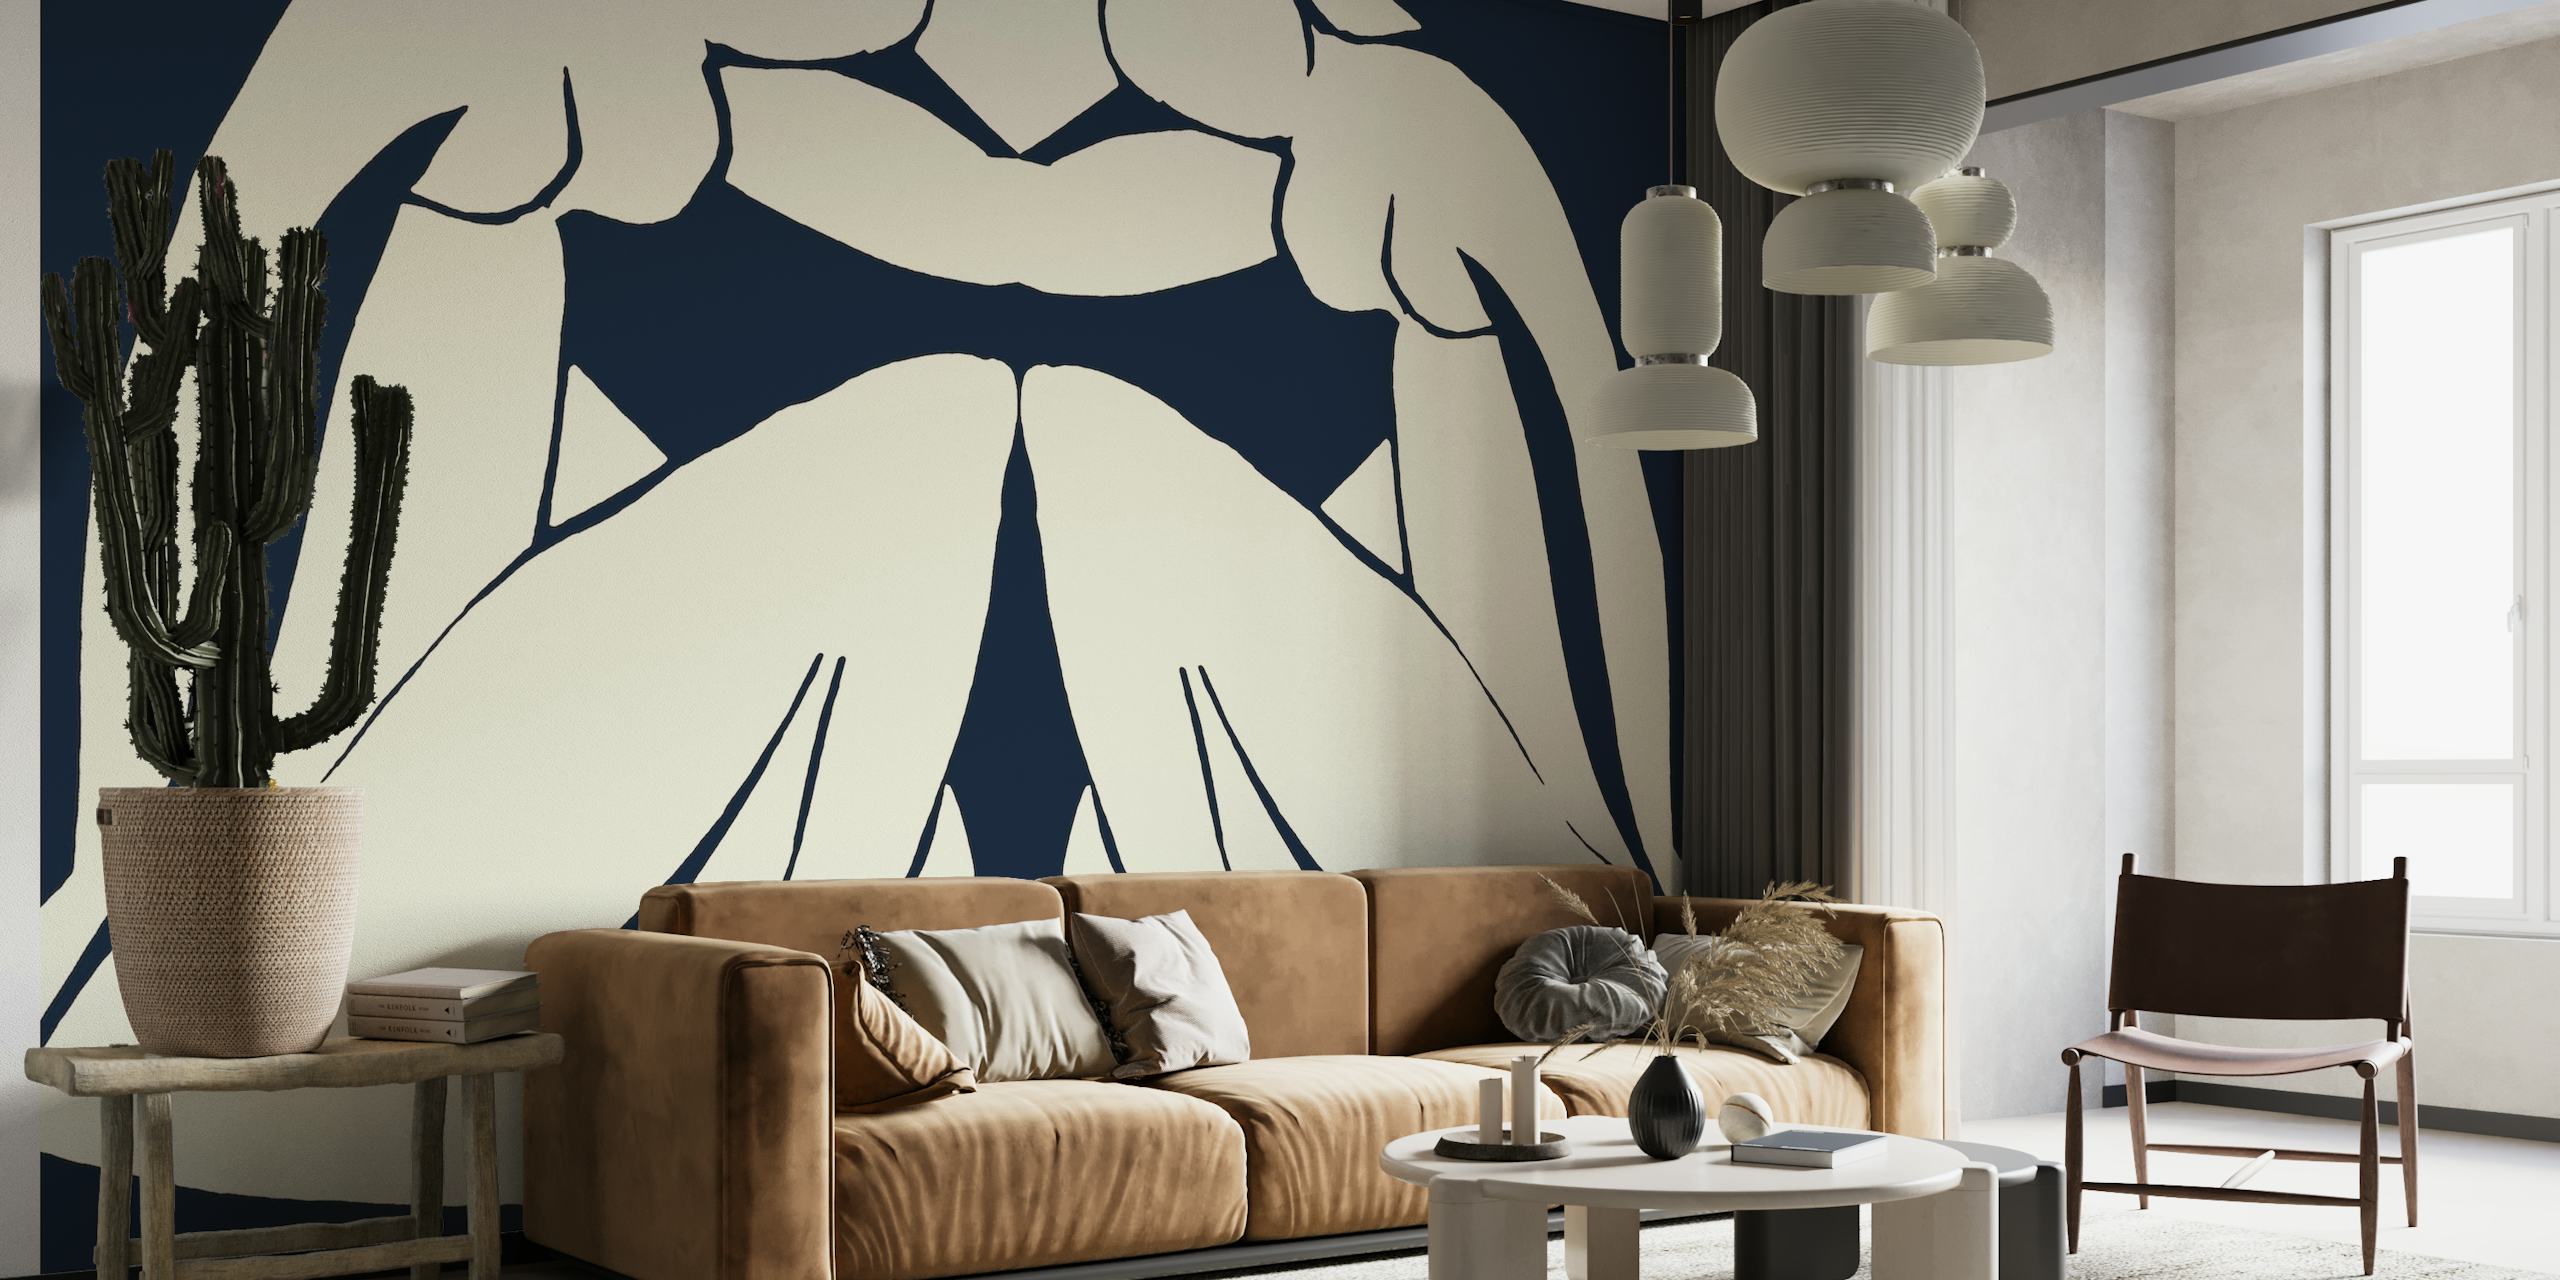 Matisse Sisters apstraktna silueta zidna slika u mornarsko plavoj i bijeloj boji